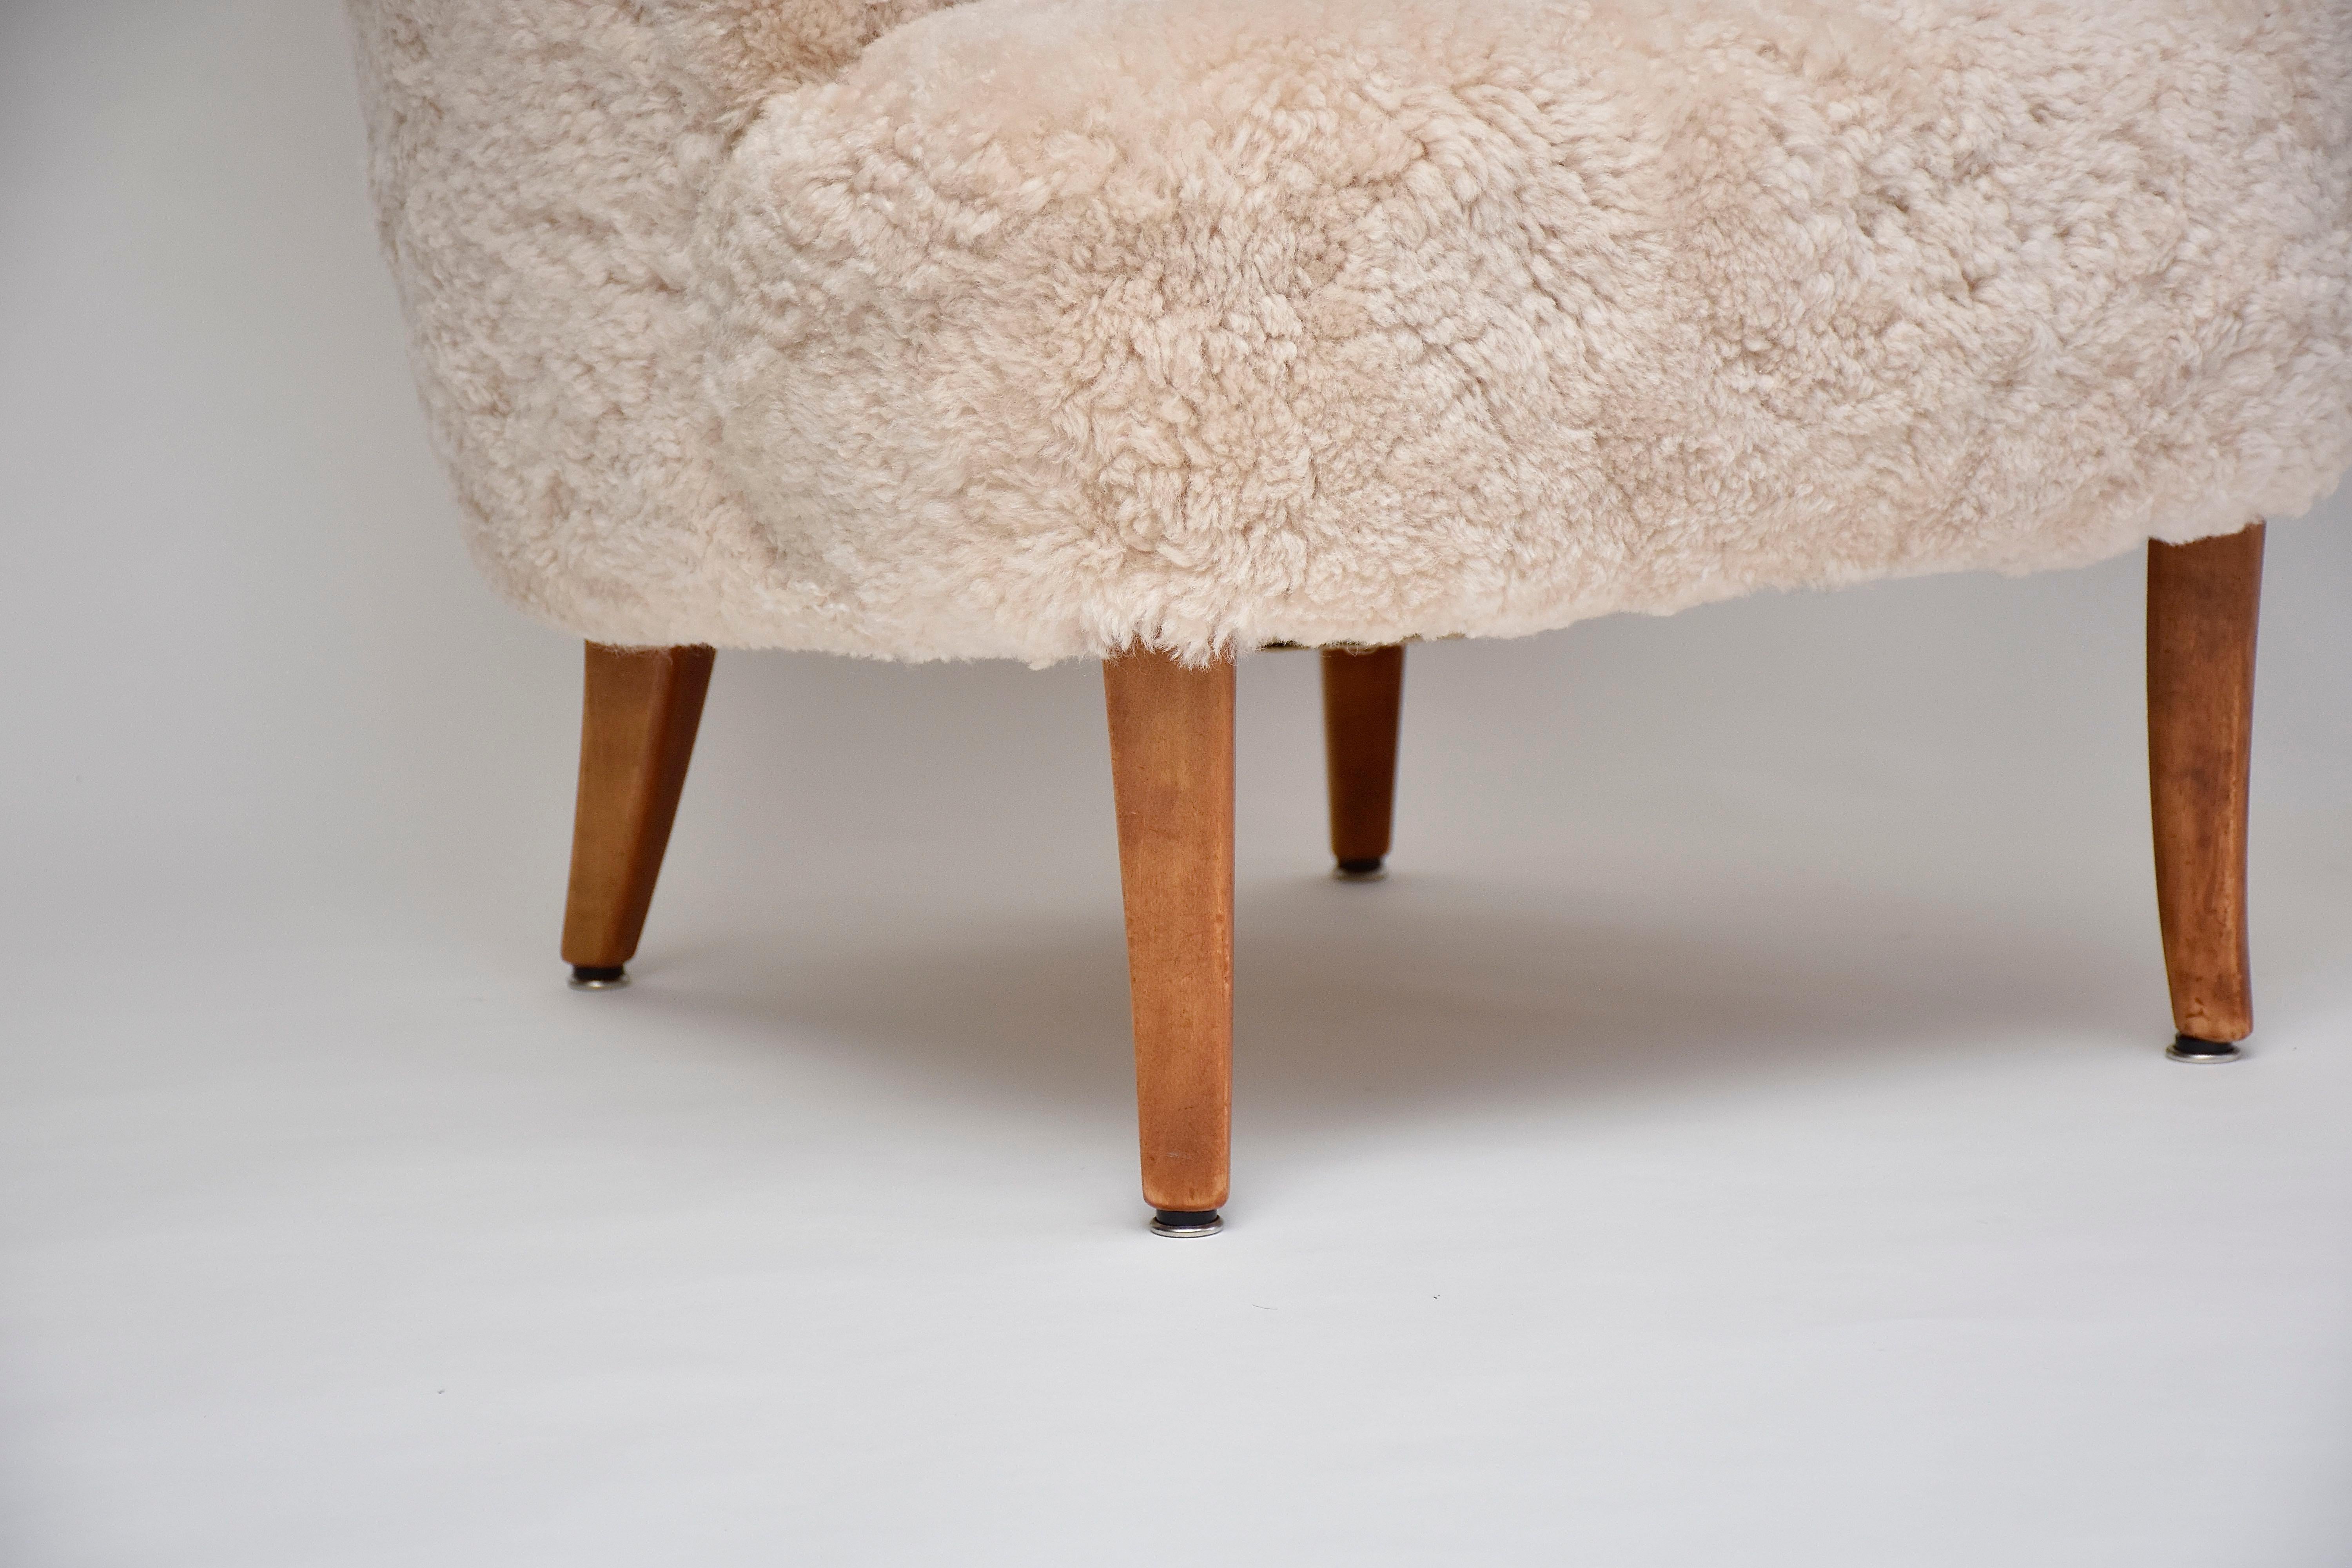 Une superbe paire de fauteuils du célèbre designer de meubles Carl Malmsten.
Ces chaises emblématiques offrent un grand confort et sont d'une qualité durable. 
Dossier touffeté par des boutons, courbes élégantes des bras et pieds en bois. 
Nouvelle